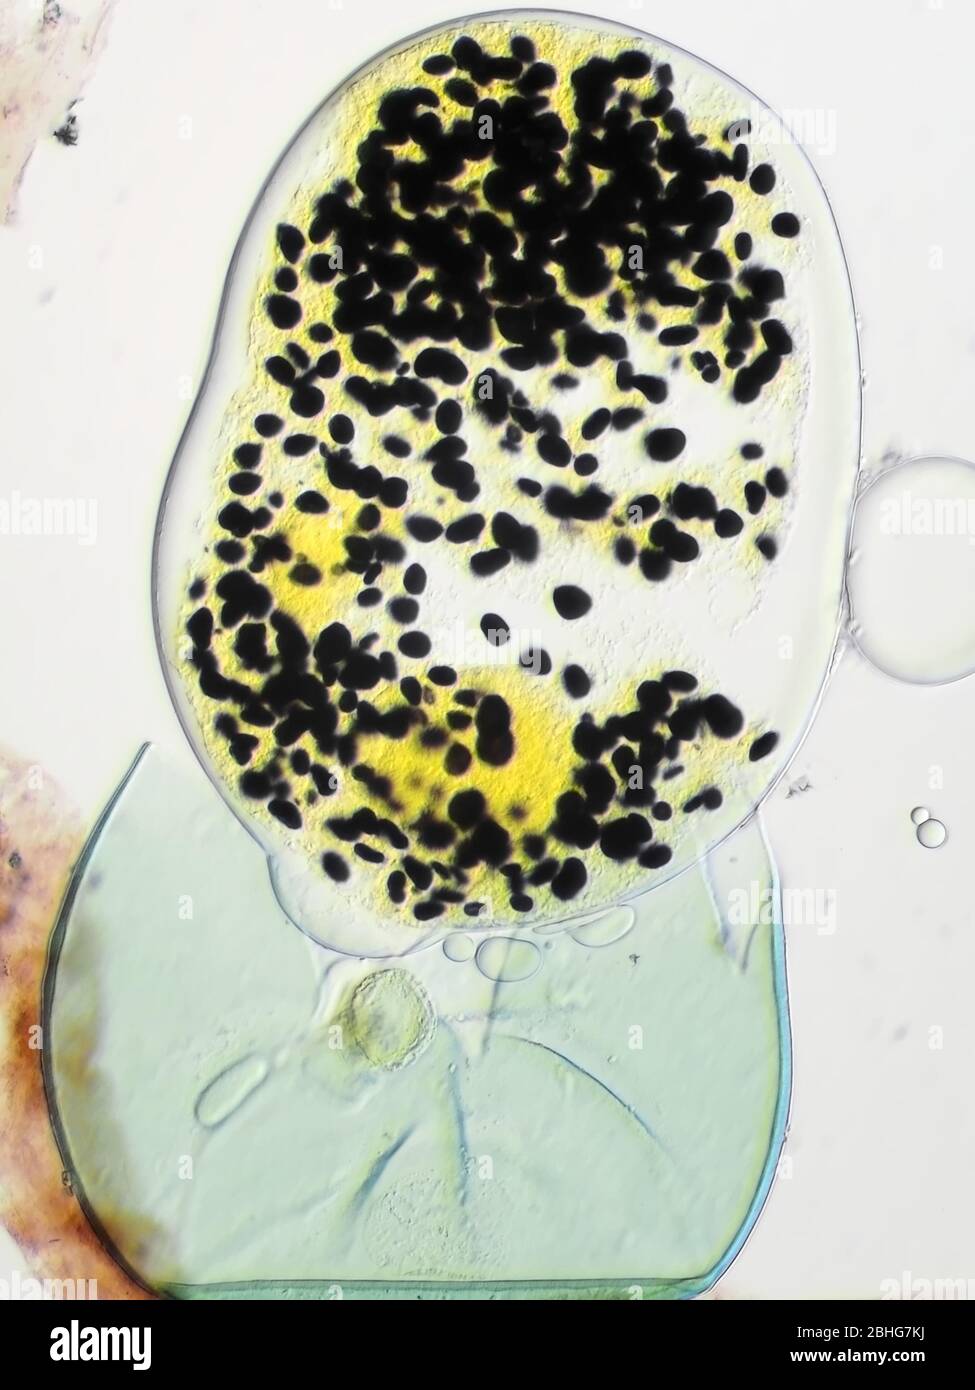 Spore de rafale ou particule de pollen non identifié et relativement grande sous le microscope, le champ de vision vertical est d'environ 0,24 mm Banque D'Images